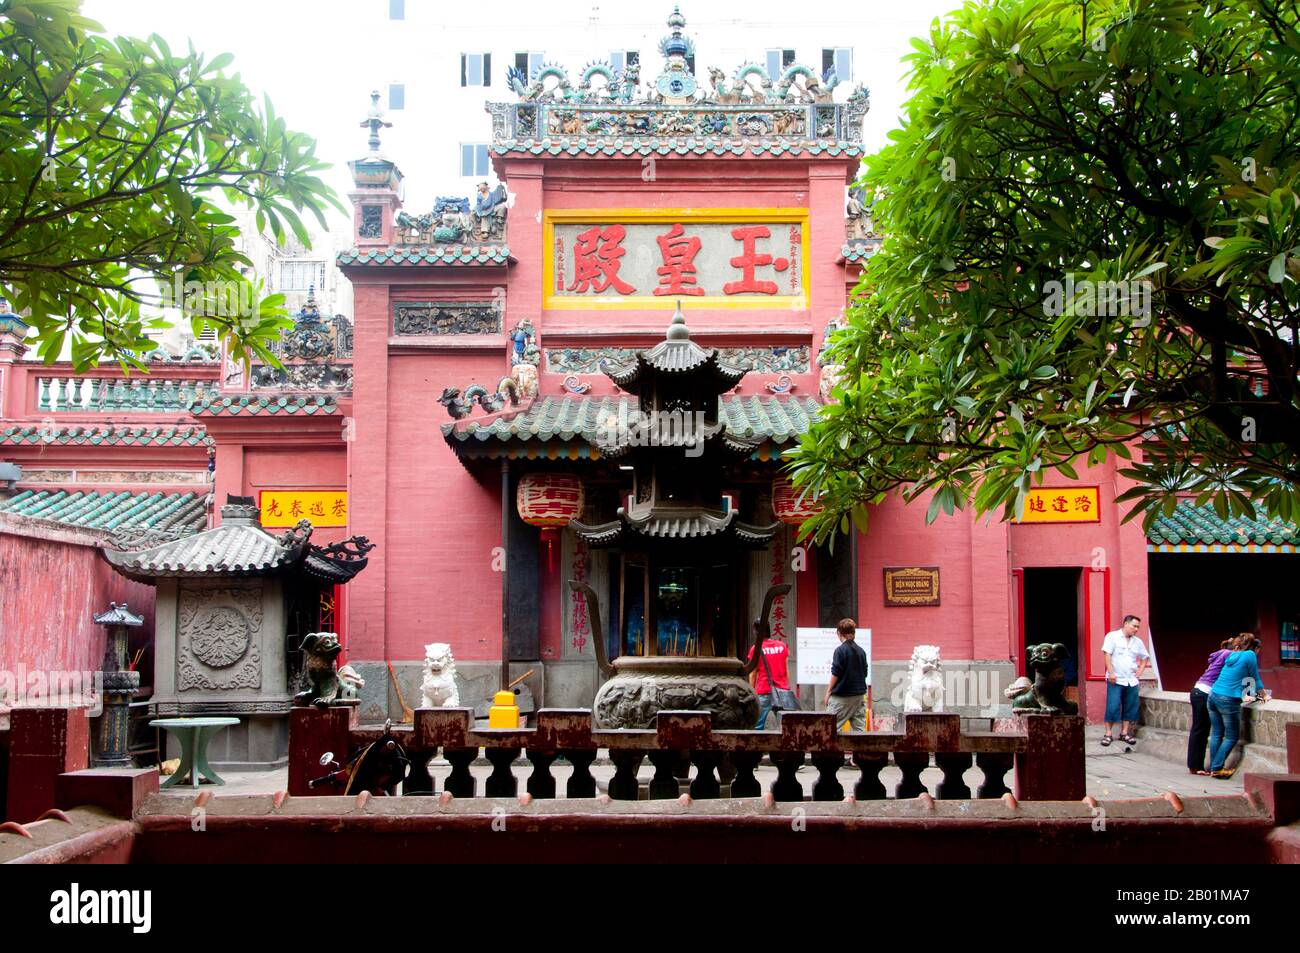 Vietnam : la cour en face de la Pagode de l'Empereur de Jade, Ho Chi Minh ville (Saigon). Chua Ngoc Hoang ou «Pagode de l'empereur de jade» a été construit en 1909, c'est un temple chinois spectaculairement coloré dédié à Ngoc Huang, empereur de jade du panthéon taoïste. L'Empereur de Jade est le souverain taoïste du ciel et de tous les royaumes d'existence ci-dessous, y compris celui de l'Homme et de l'Enfer, selon la mythologie taoïste. Il est l'un des dieux les plus importants du panthéon de la religion traditionnelle chinoise. Dans la croyance taoïste, l'Empereur de Jade gouverne tout le Royaume des mortels et en dessous. Banque D'Images